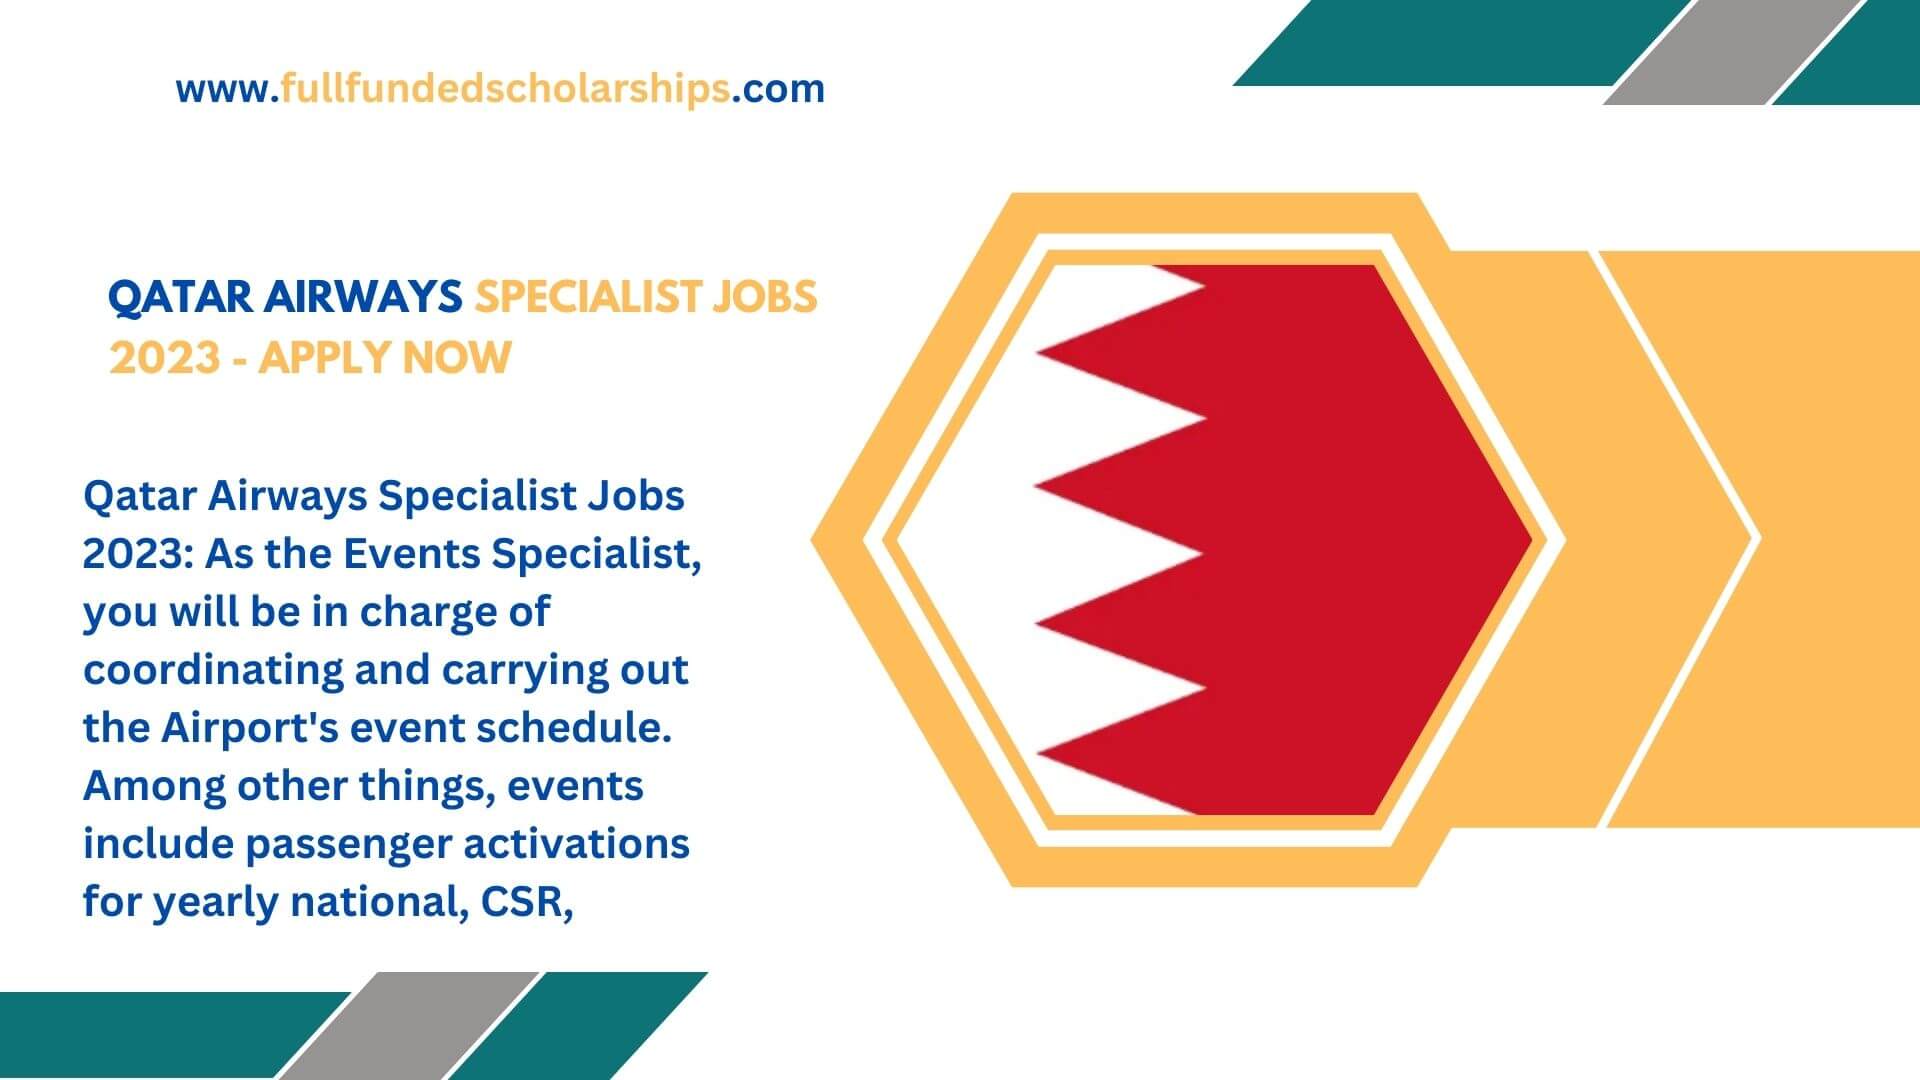 Qatar Airways Specialist Jobs 2023 - Apply Now